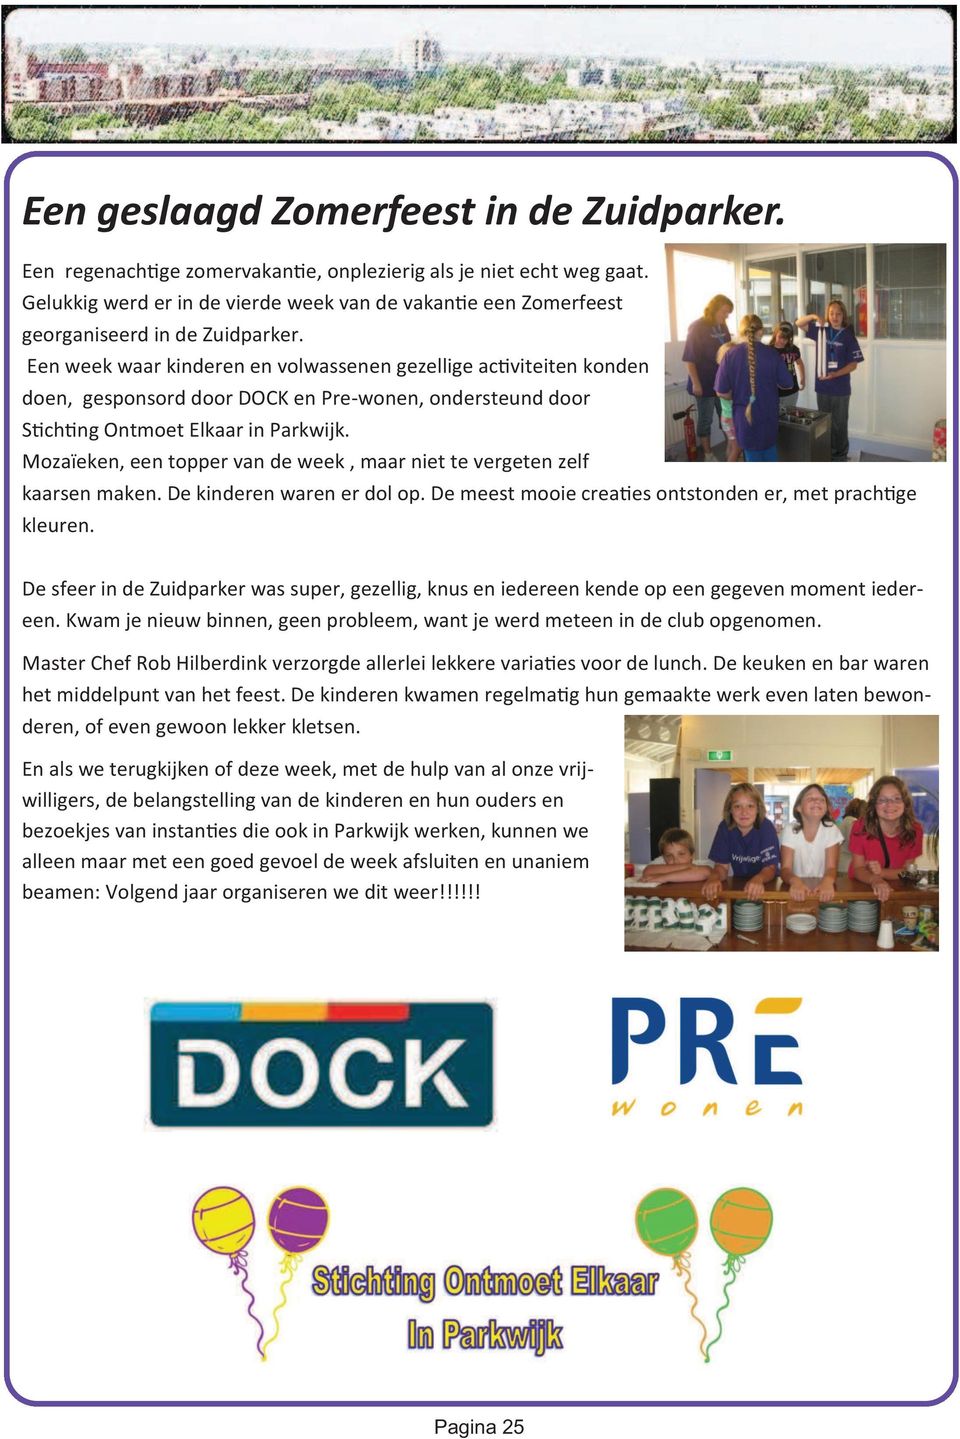 Een week waar kinderen en volwassenen gezellige ac viteiten konden doen, gesponsord door DOCK en Pre-wonen, ondersteund door S ch ng Ontmoet Elkaar in Parkwijk.